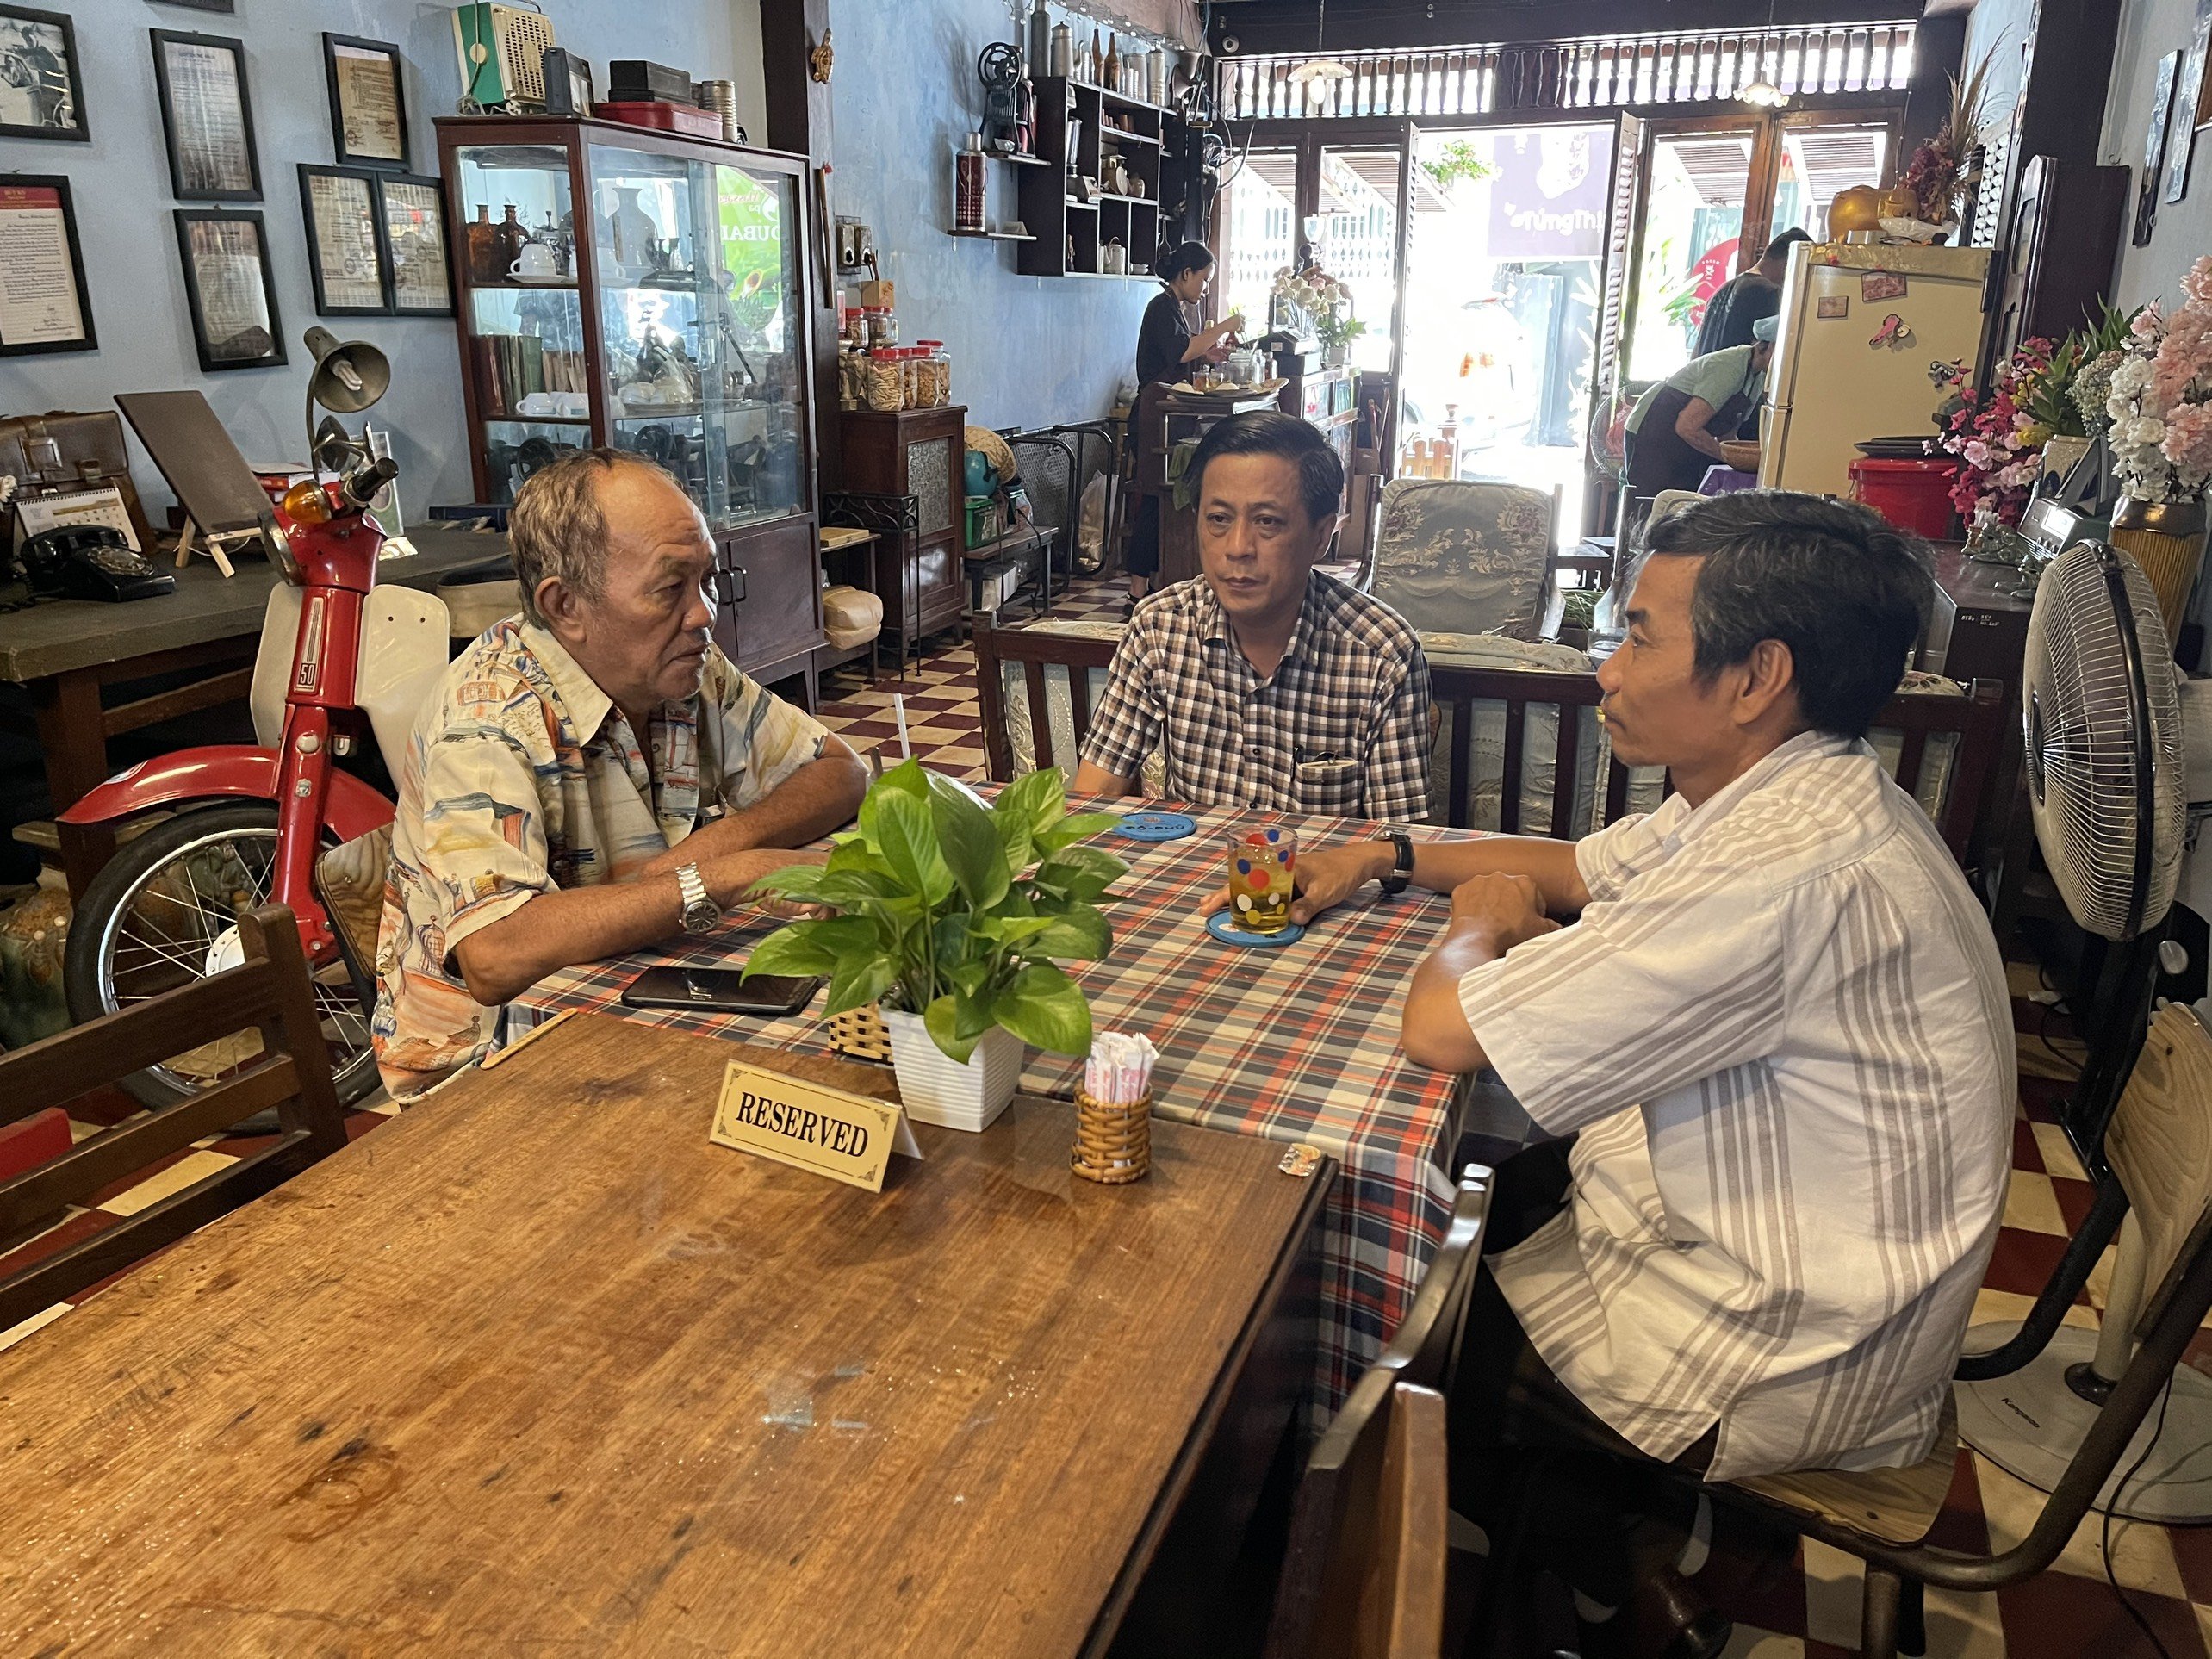 Ông Trần Vũ Bình (ngồi giữa) – người khai mở các điểm đến “Biệt động Sài Gòn” đang thuyết trình cho du khách nghe về ý nghĩa và công tác sưu tầm các hiện vật